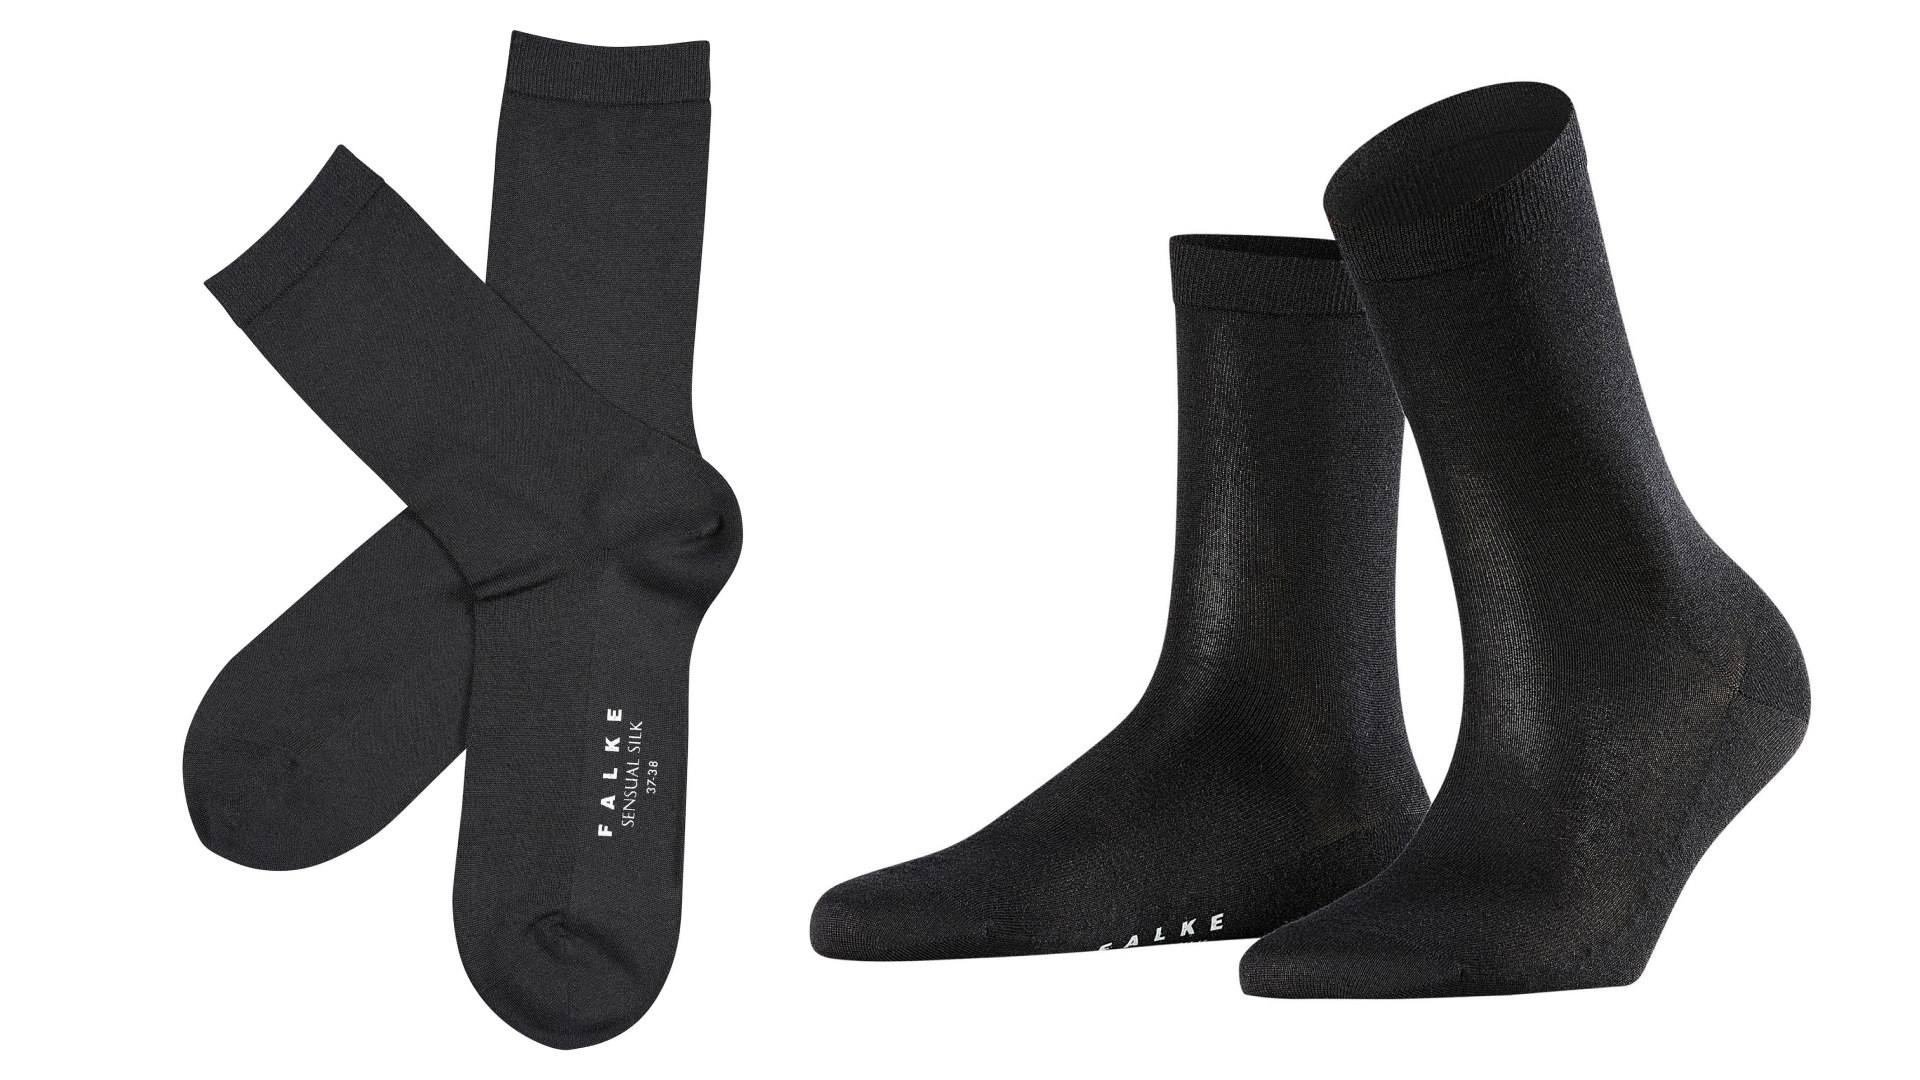 Black Falke Sensitive Malaga Midcalf Socks 